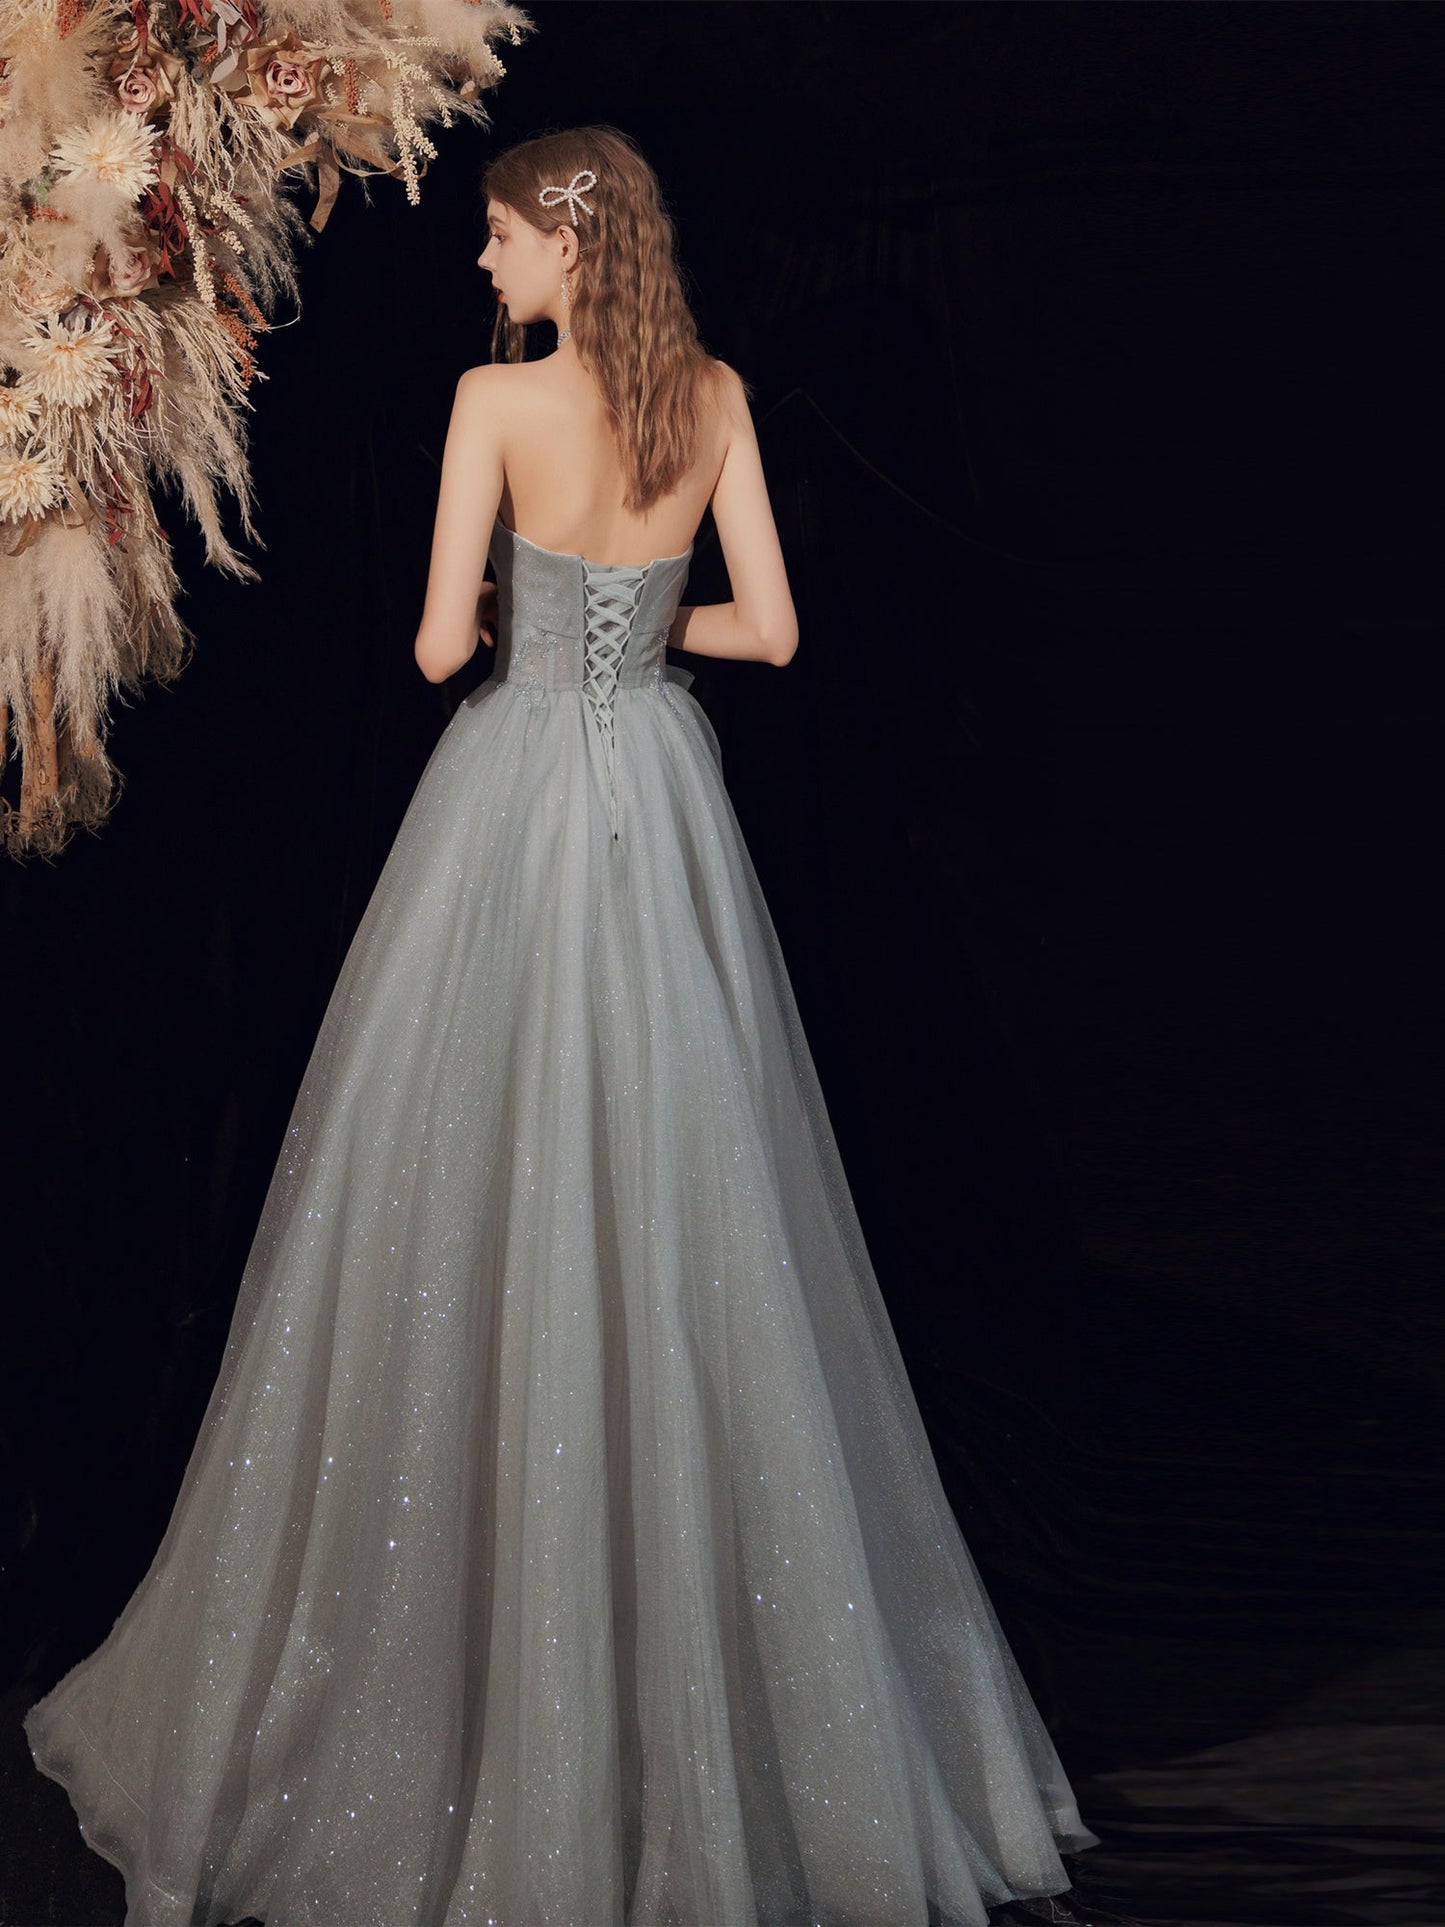 Glitter Strapless Gray Long Prom Dress